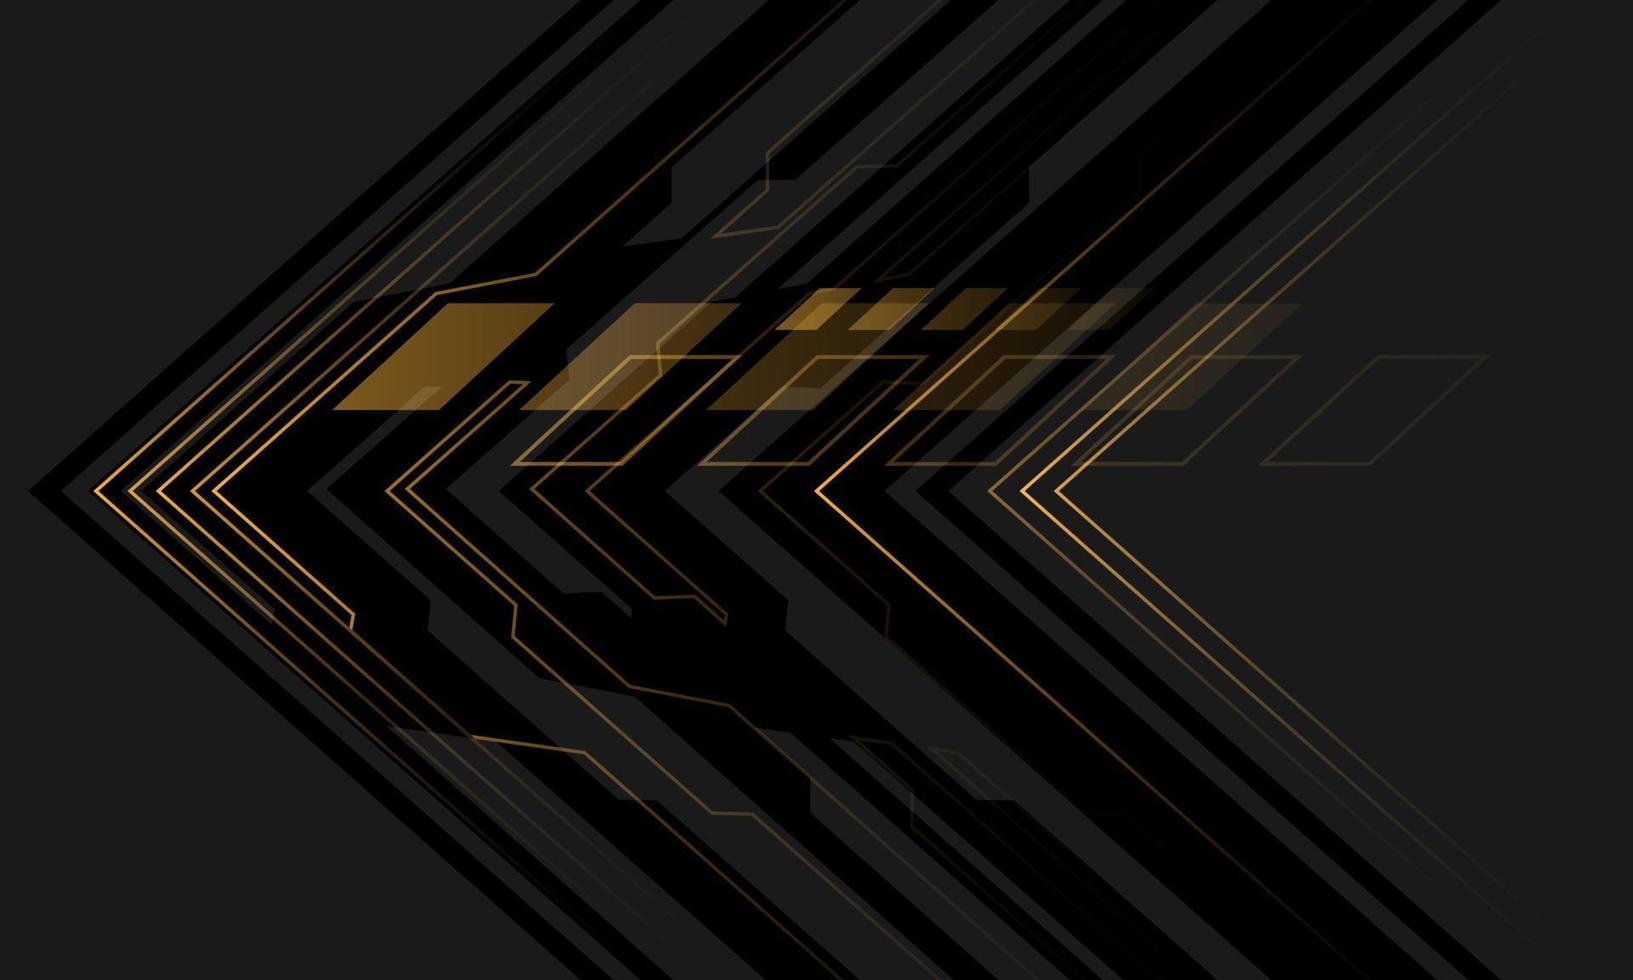 direção de seta cibernética de luz amarela de circuito preto abstrato no vetor de fundo de tecnologia futurista moderna de design cinza